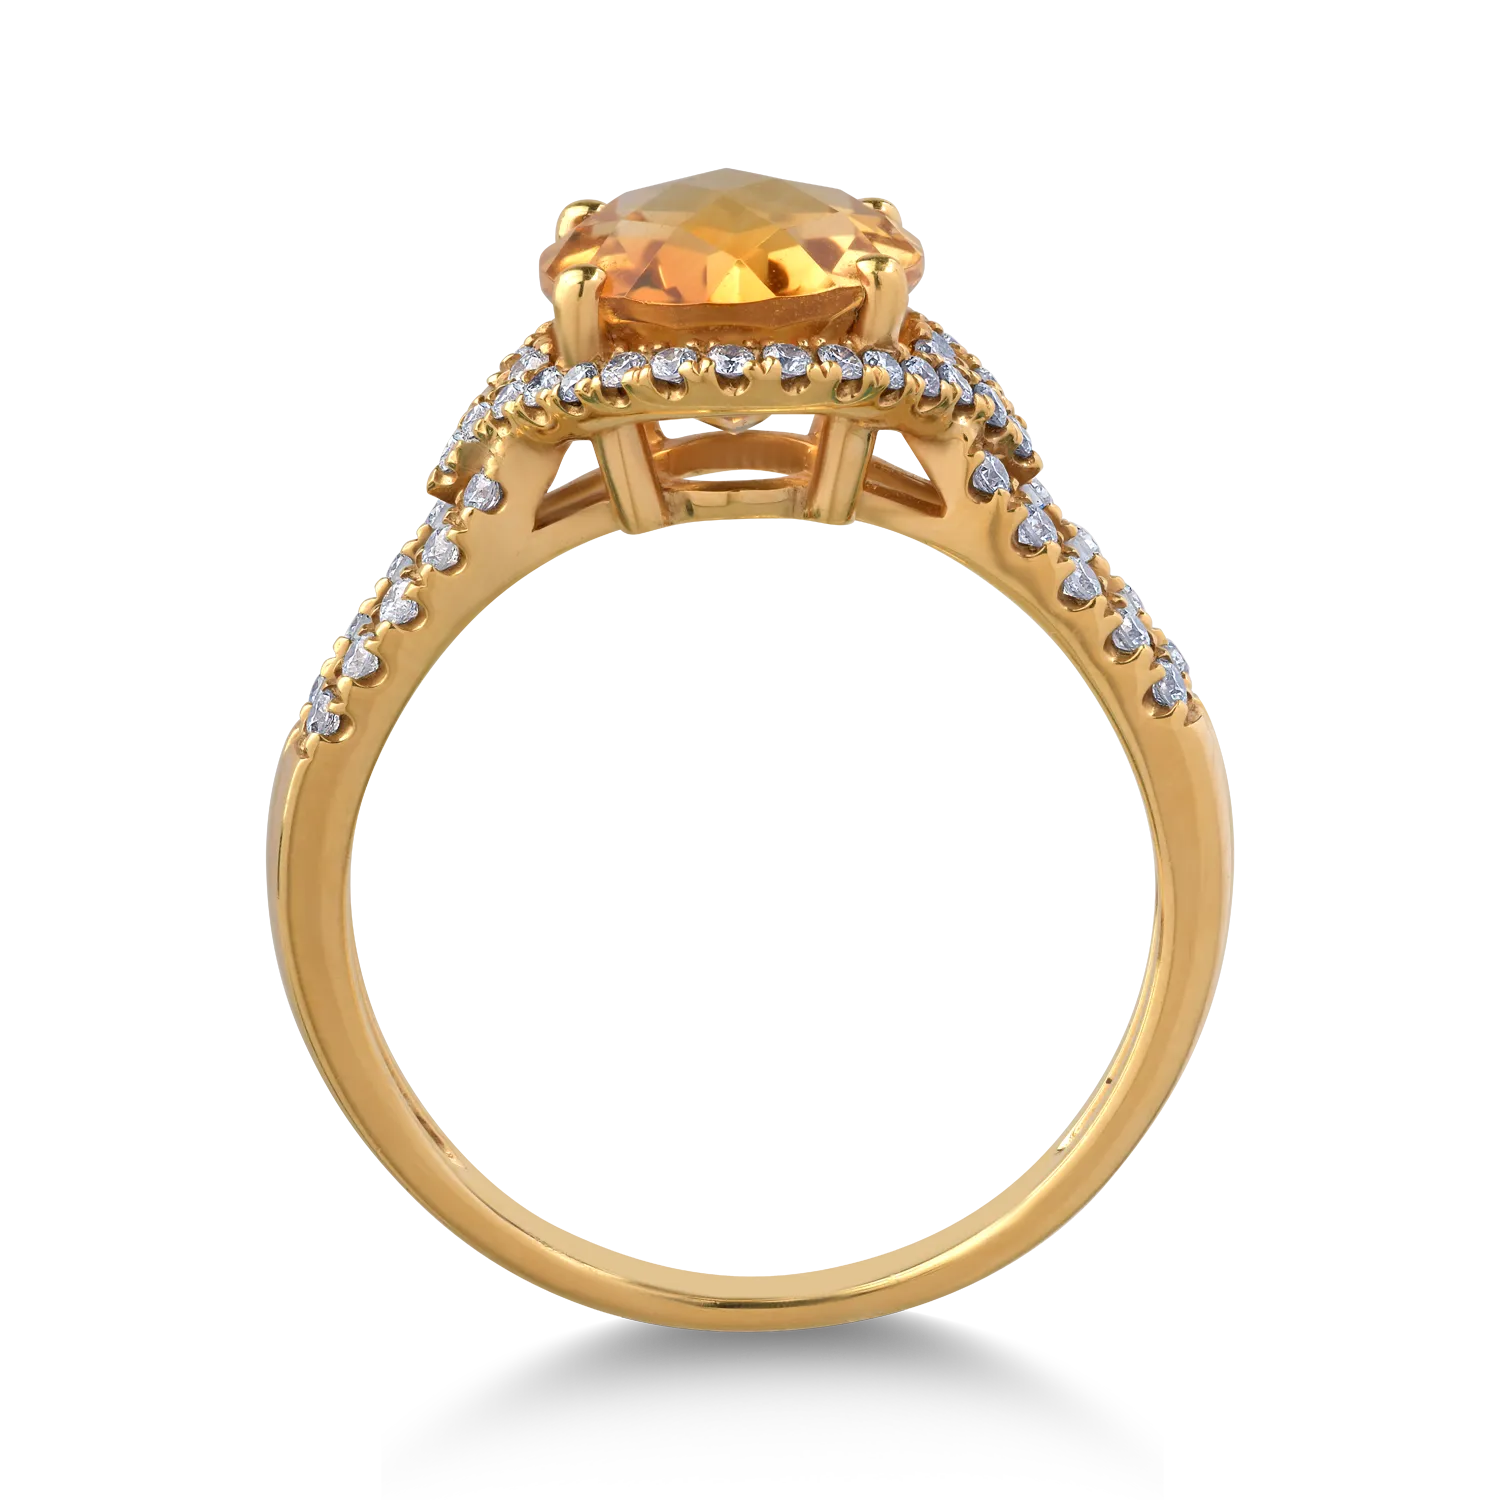 18K sárga arany gyűrű 2.7ct citrinnel és 0.34ct gyémántokkal